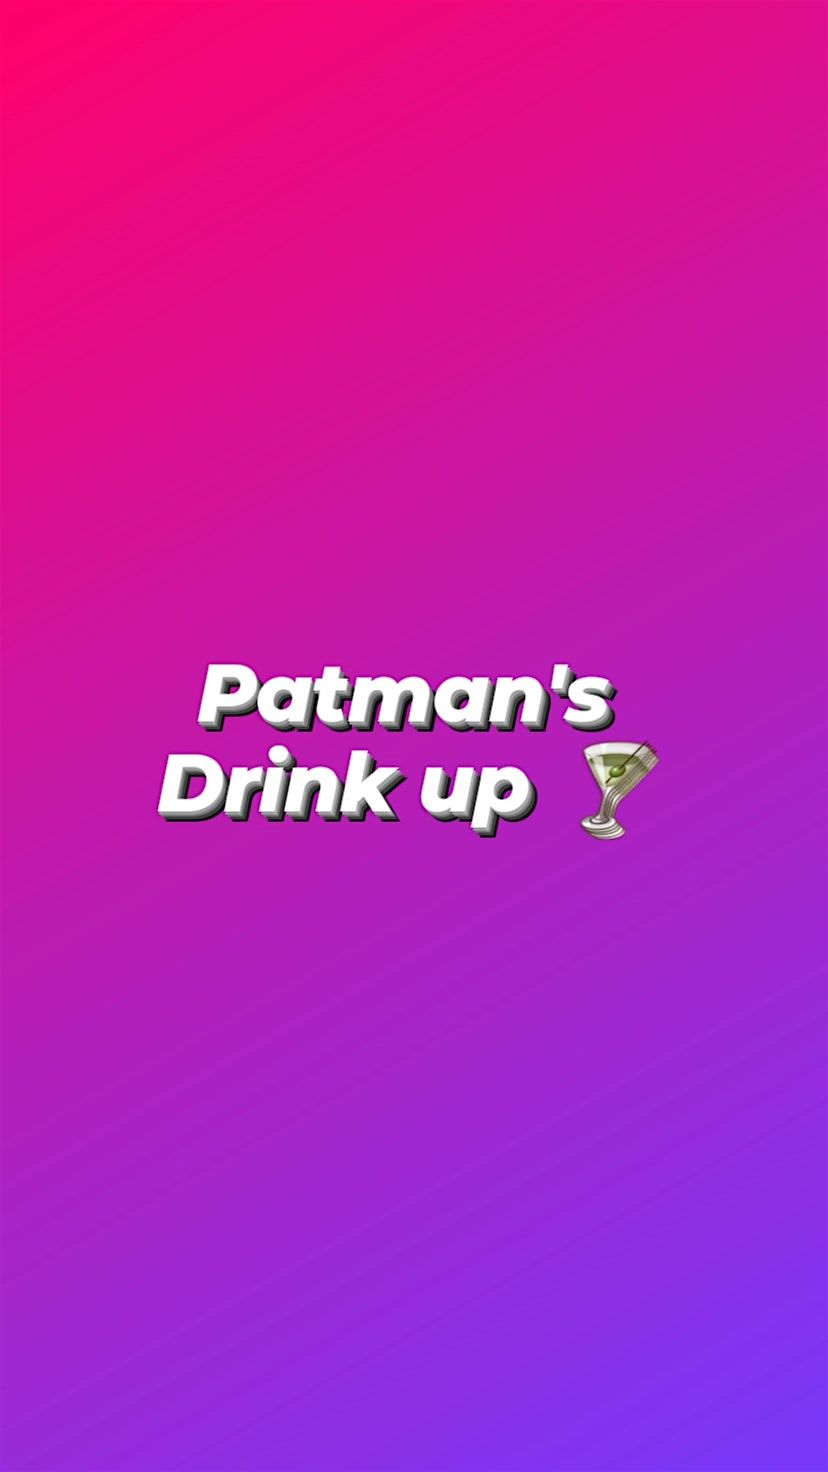 Patman's Drink Up (April)